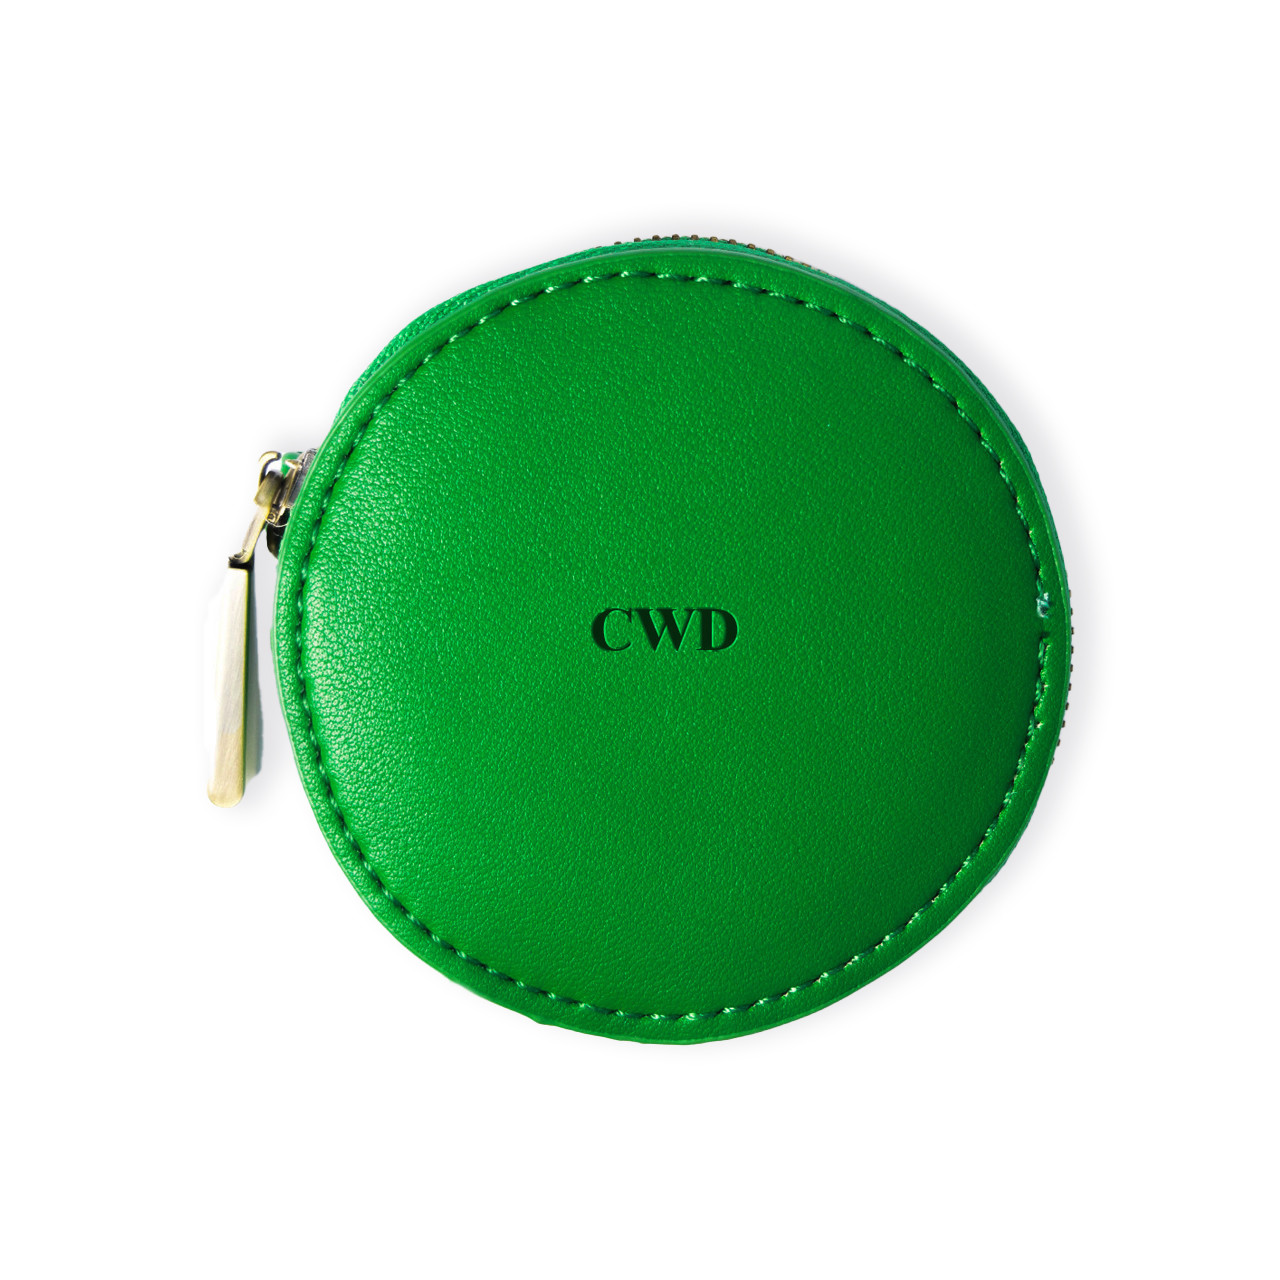 Leather Round Wallet Vintage Handmade Button Closure Unisex Money Purse  Card Bag | eBay